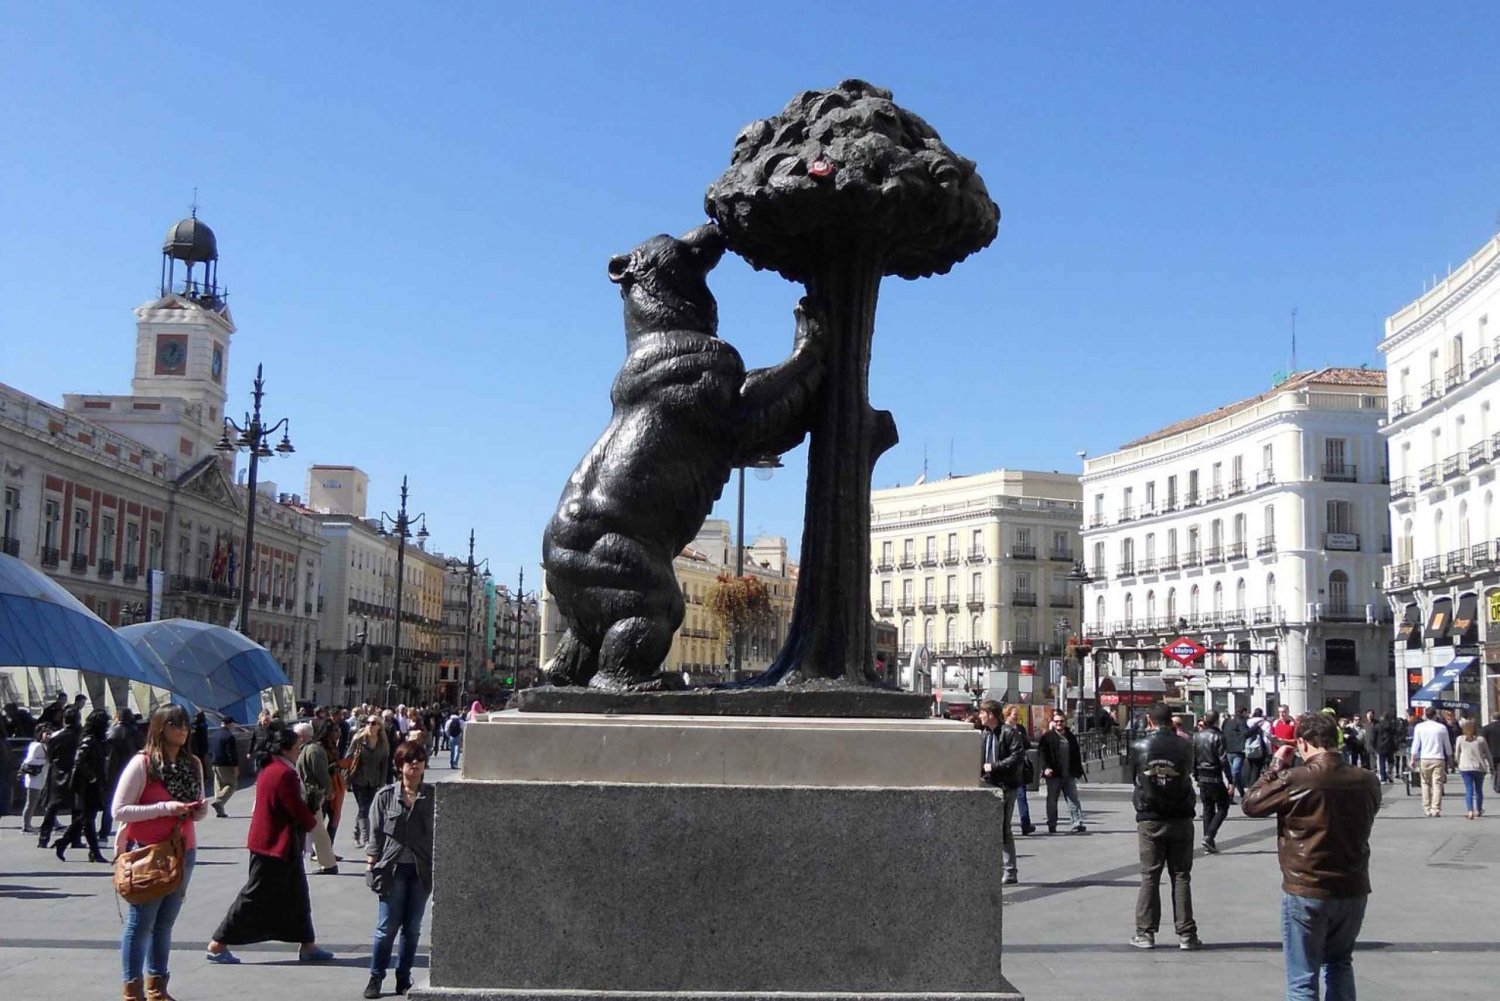 Tour della città di Madrid: cultura e storia